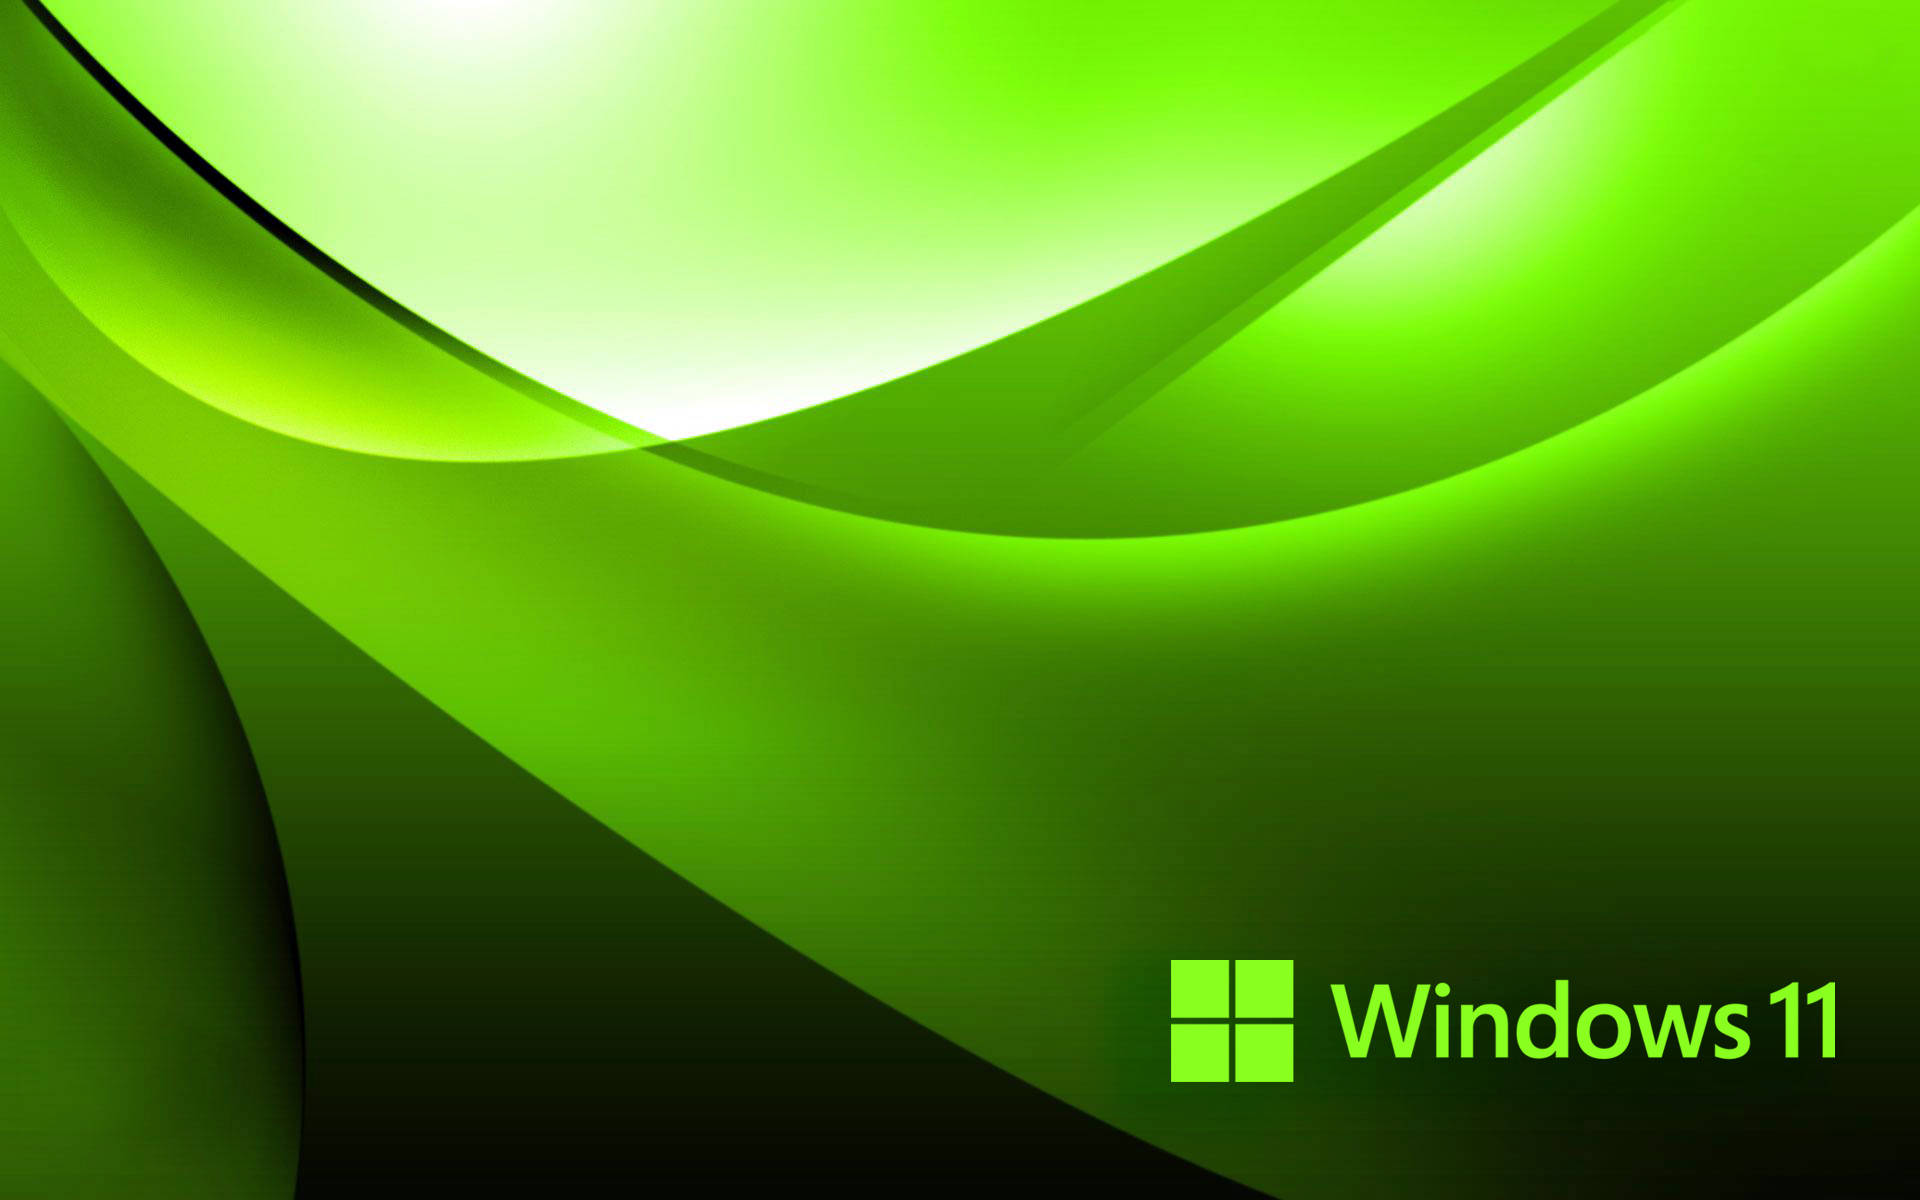 Bộ sưu tập hình nền Windows 11 không thể thiếu màu xanh lá cây tươi tắn, sống động. Hãy chọn cho mình bức ảnh phù hợp với sở thích và phong cách của bạn như ảnh cây cỏ, khu rừng mát mẻ, hay những bông hoa nở rực rỡ.